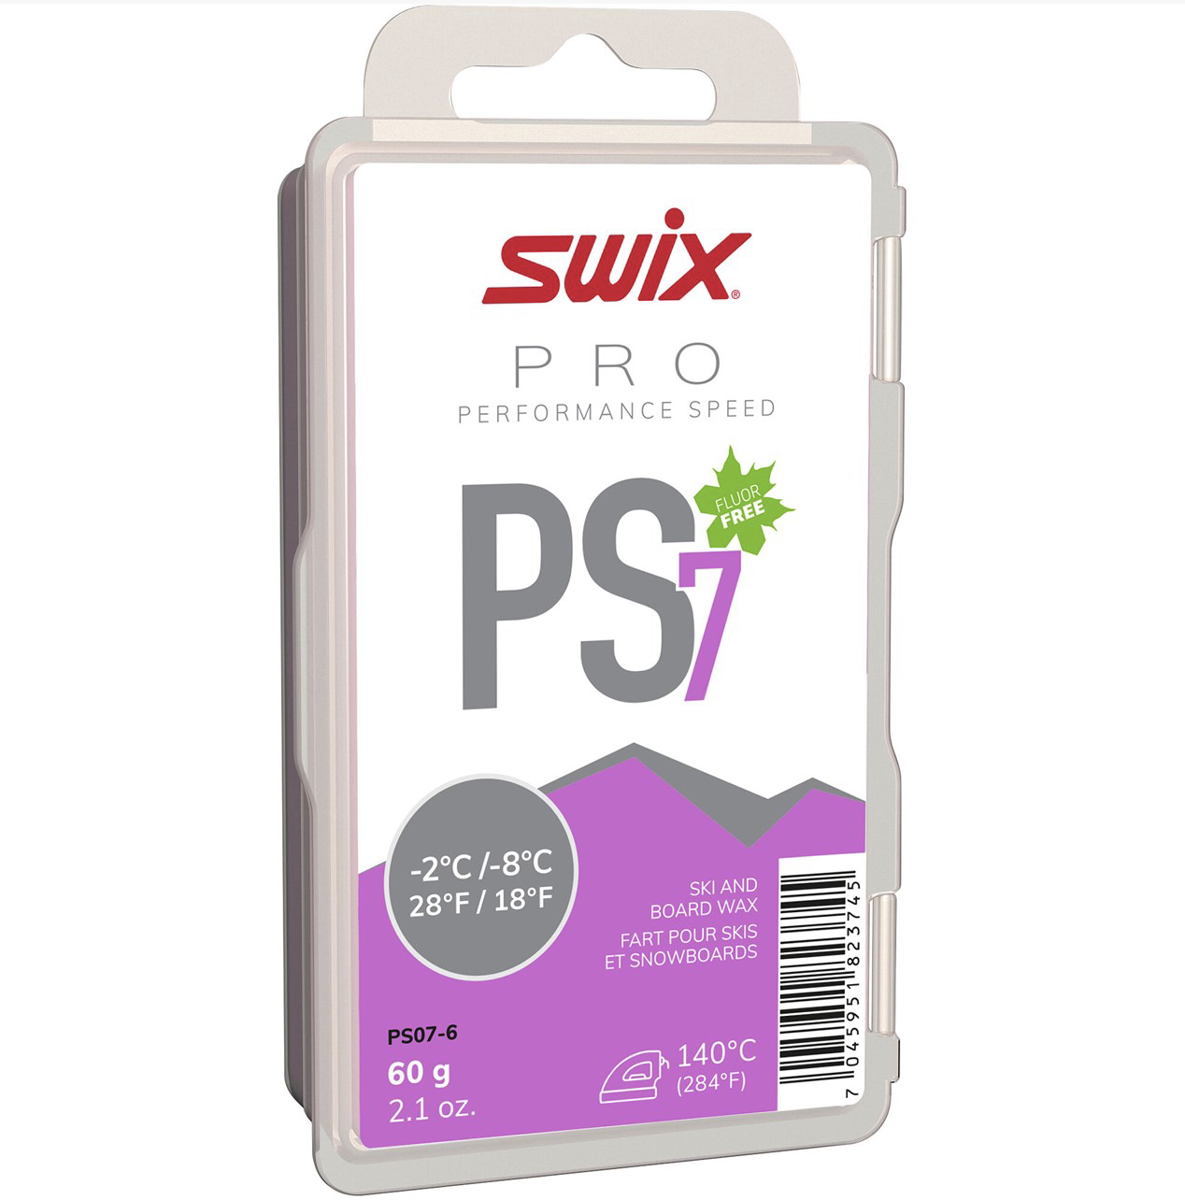 Bilde av Swix  PS7 Violet, -2°C/-8°C, 60g